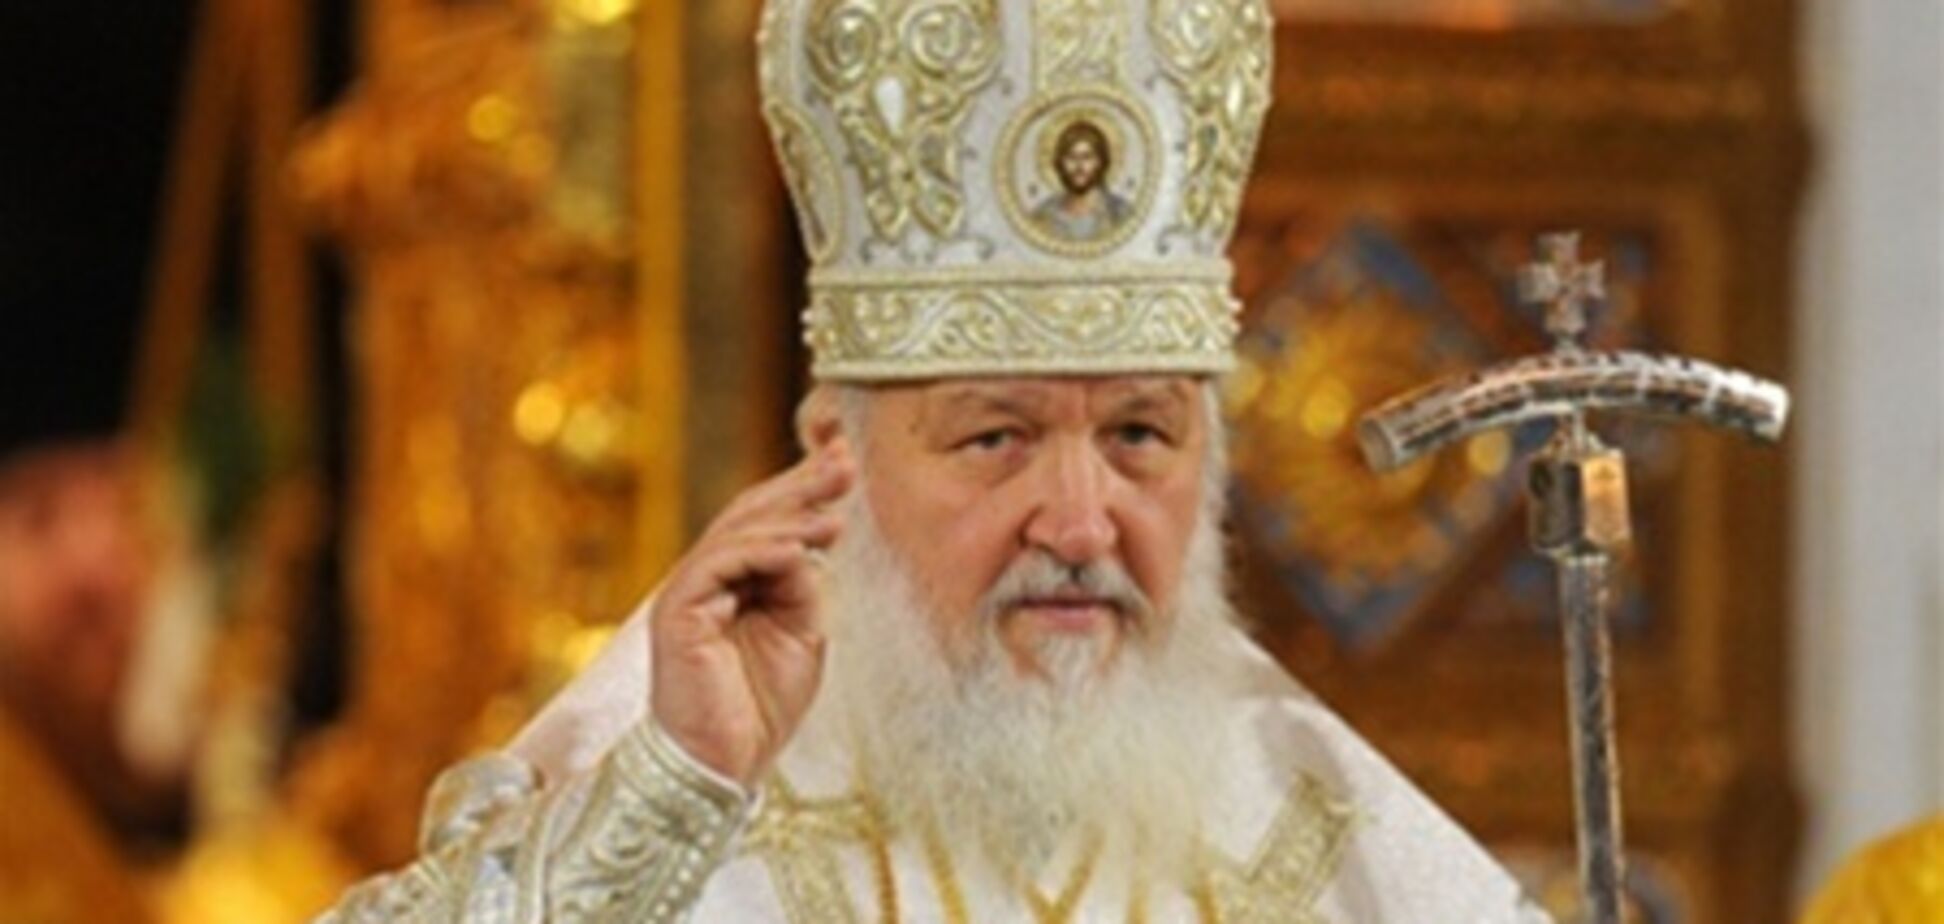 Патриарх Кирилл: между сливками и спасением прямая связь